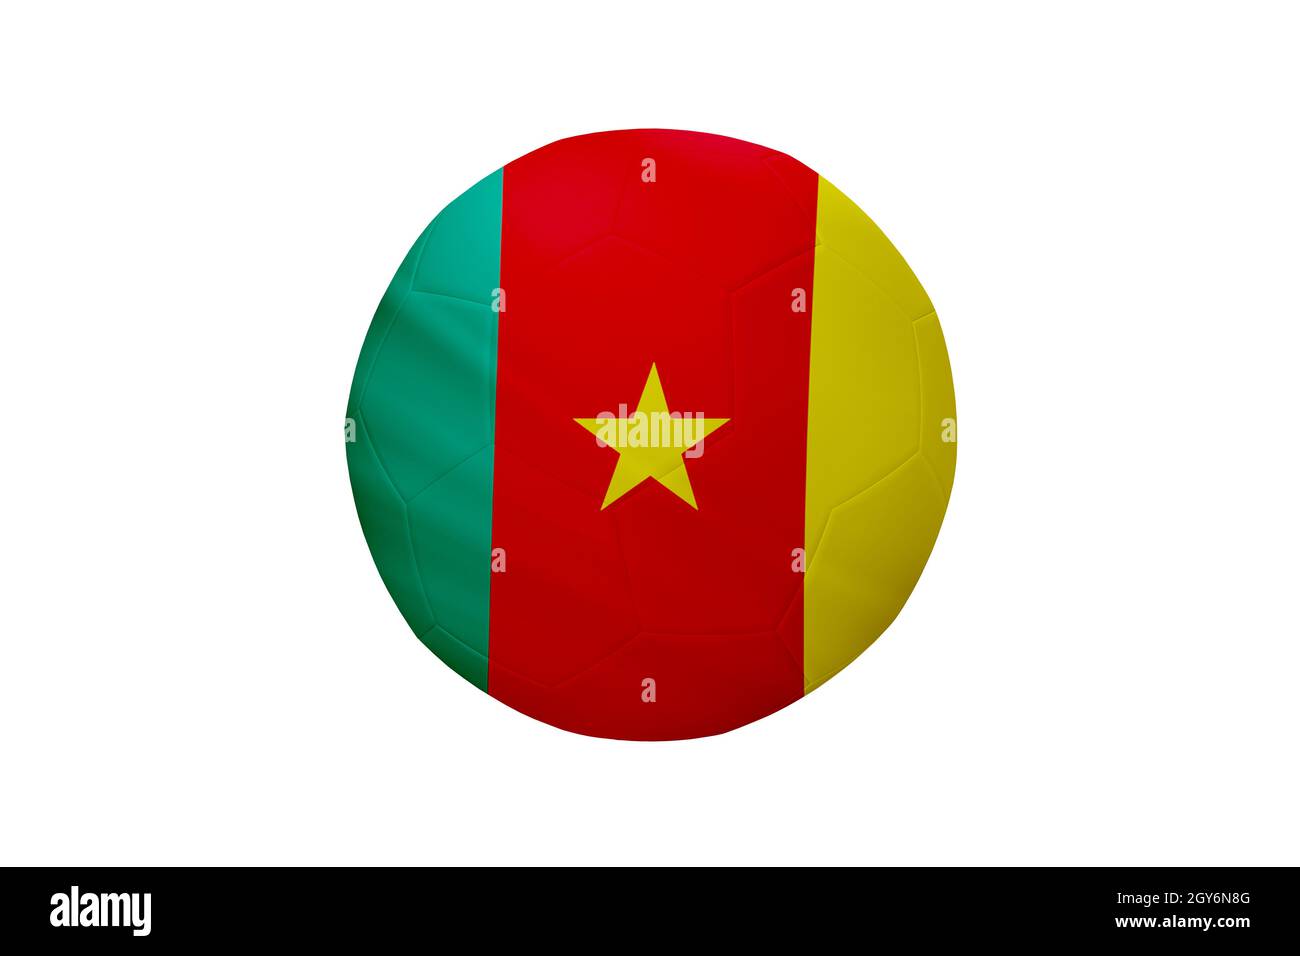 Football aux couleurs du drapeau camerounais isolé sur fond blanc. Dans une image de championnat conceptuel soutenant le Cameroun. Banque D'Images